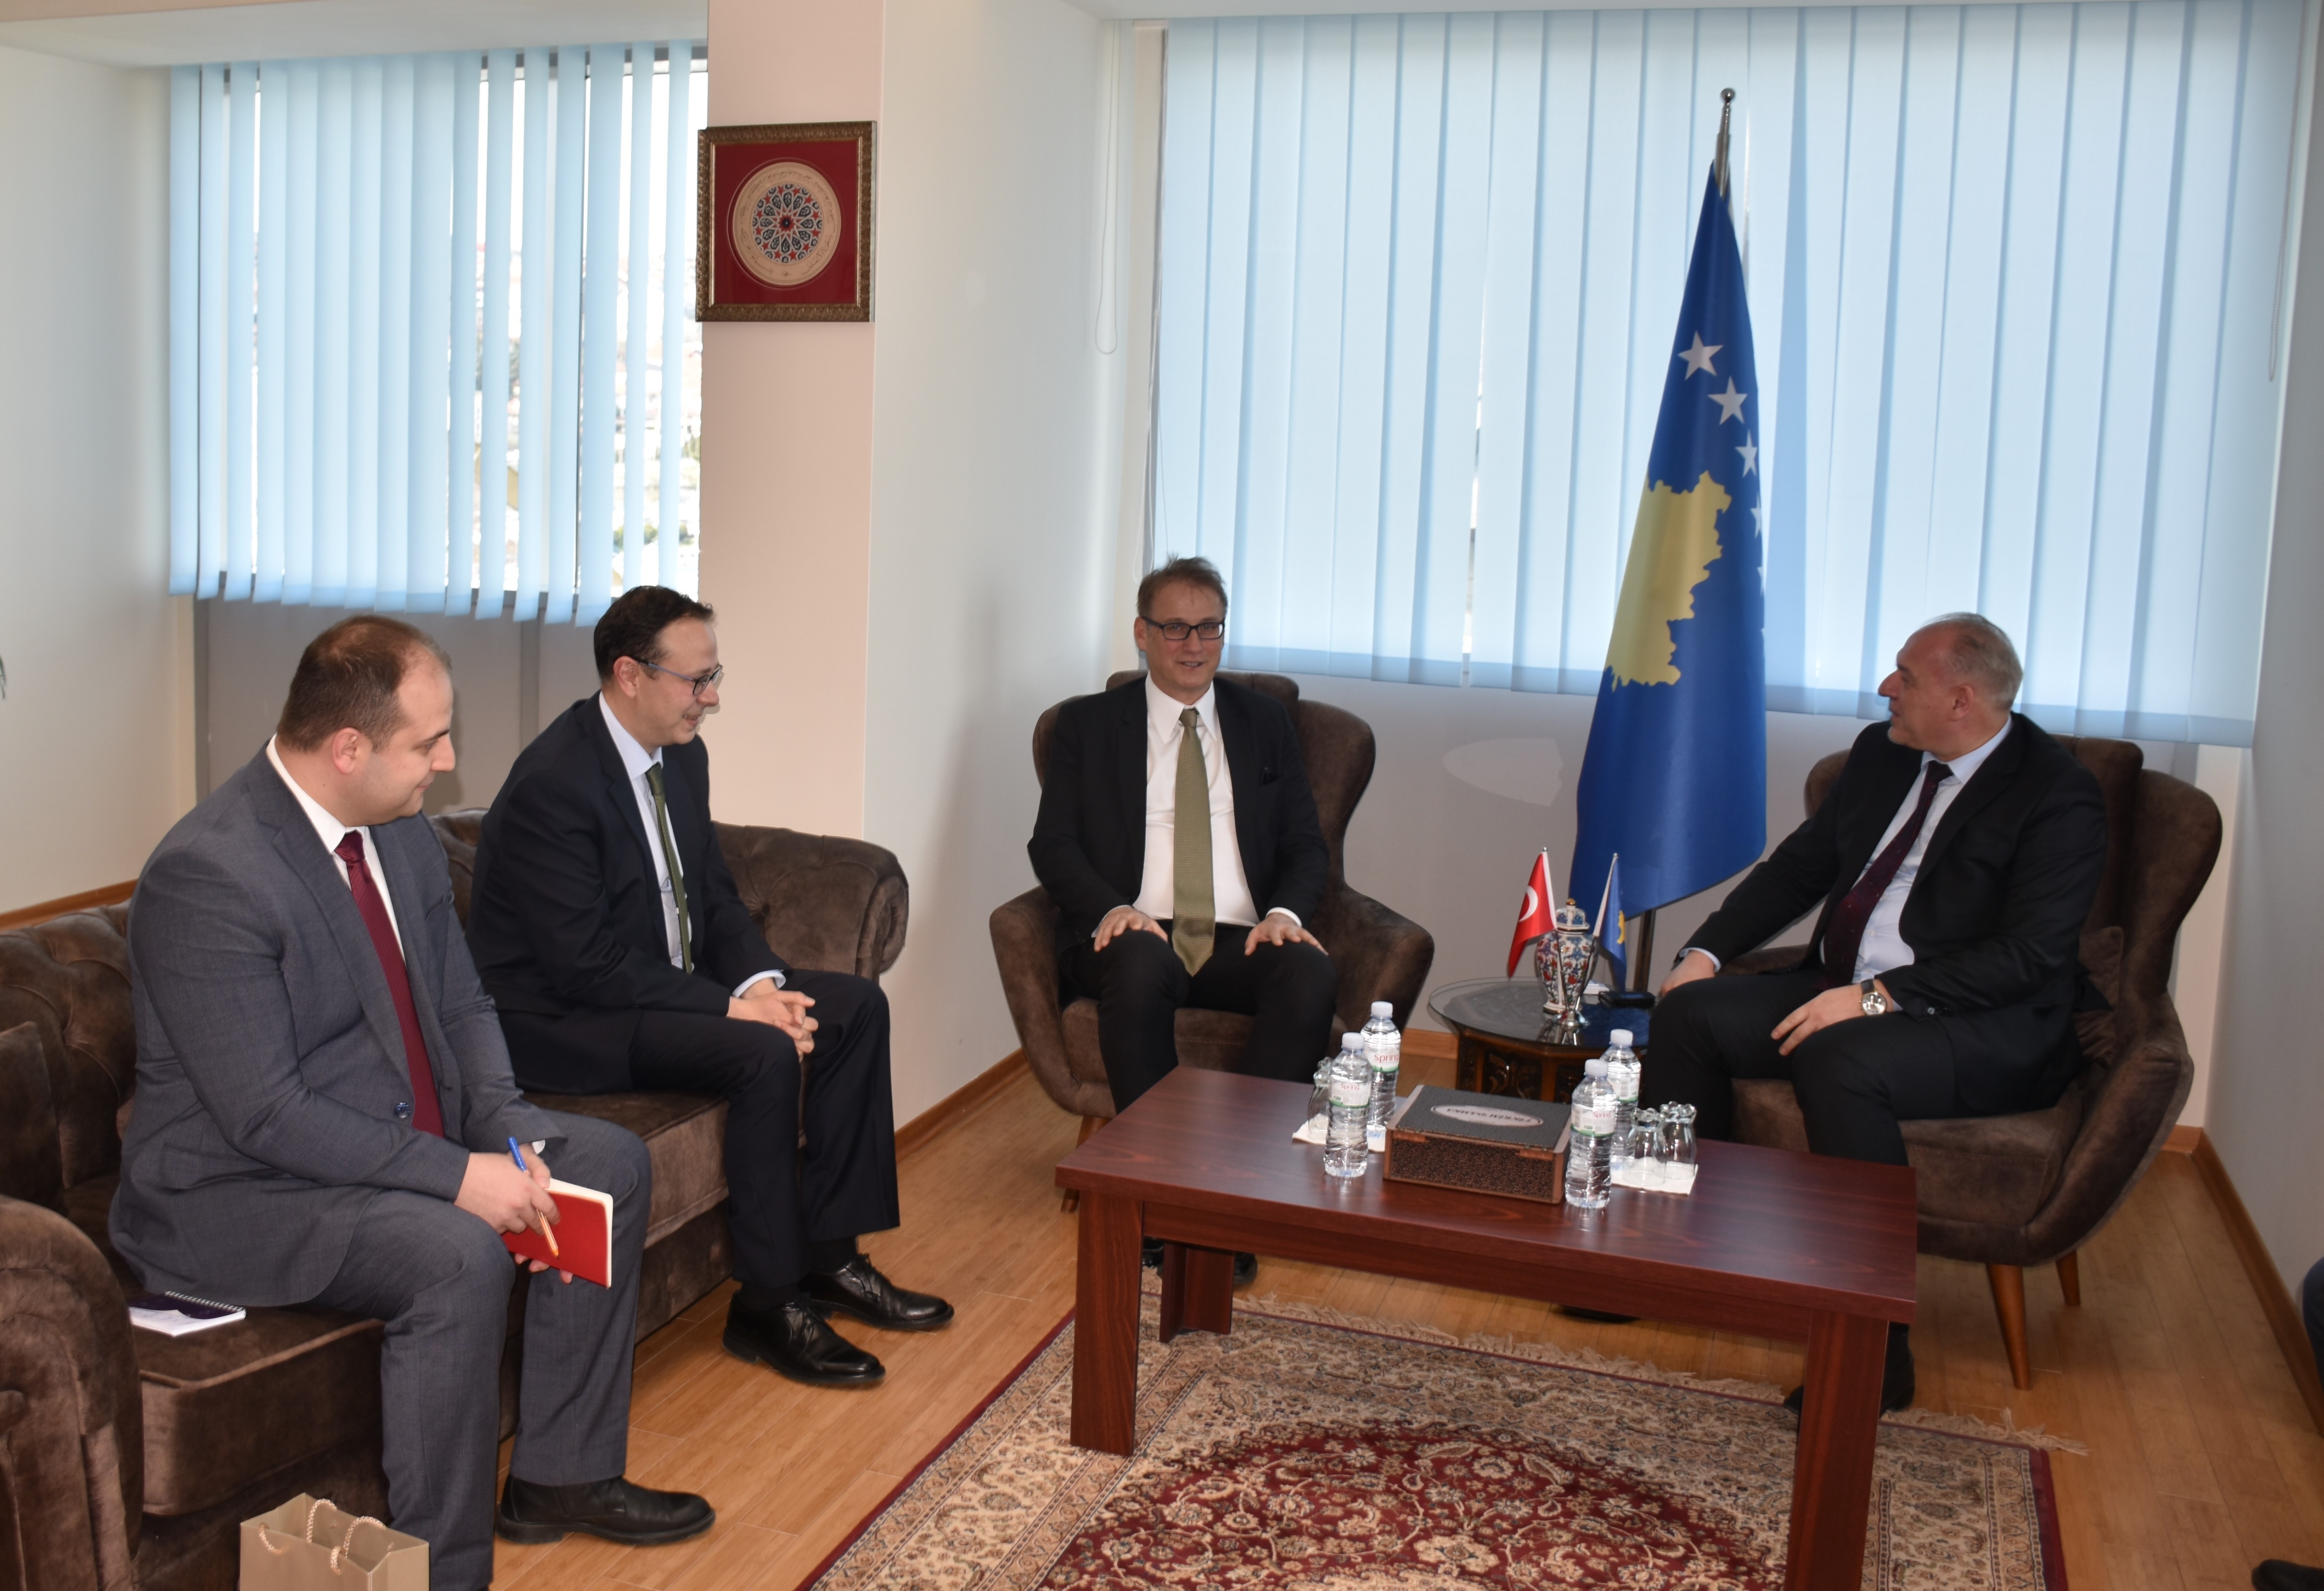 Ministri z.Damka priti në takim Ambasadorin z. İlhan Saygılı, Drejtor i Përgjithshëm për Ballkanin dhe Evropën Qendrore - Ministria e Punëve të Jashtme të Republikës së Turqisë.